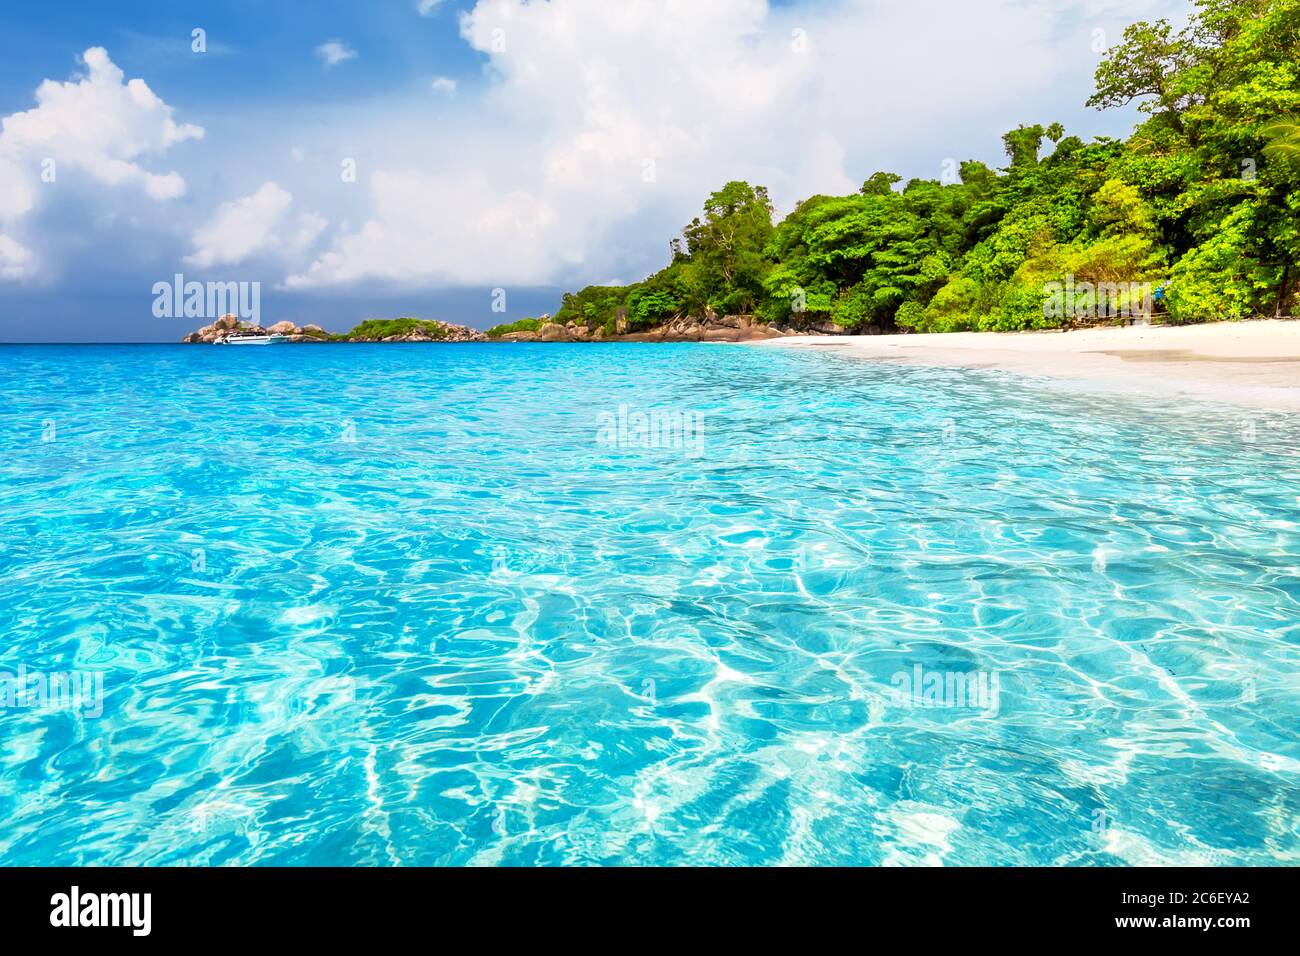 Schöner Strand und blauer Himmel auf Similan Inseln, Thailand. Urlaub Urlaub Urlaub Hintergrund Wallpaper. Blick auf schöne tropische Strand.Reisen Sommer Urlaub b Stockfoto